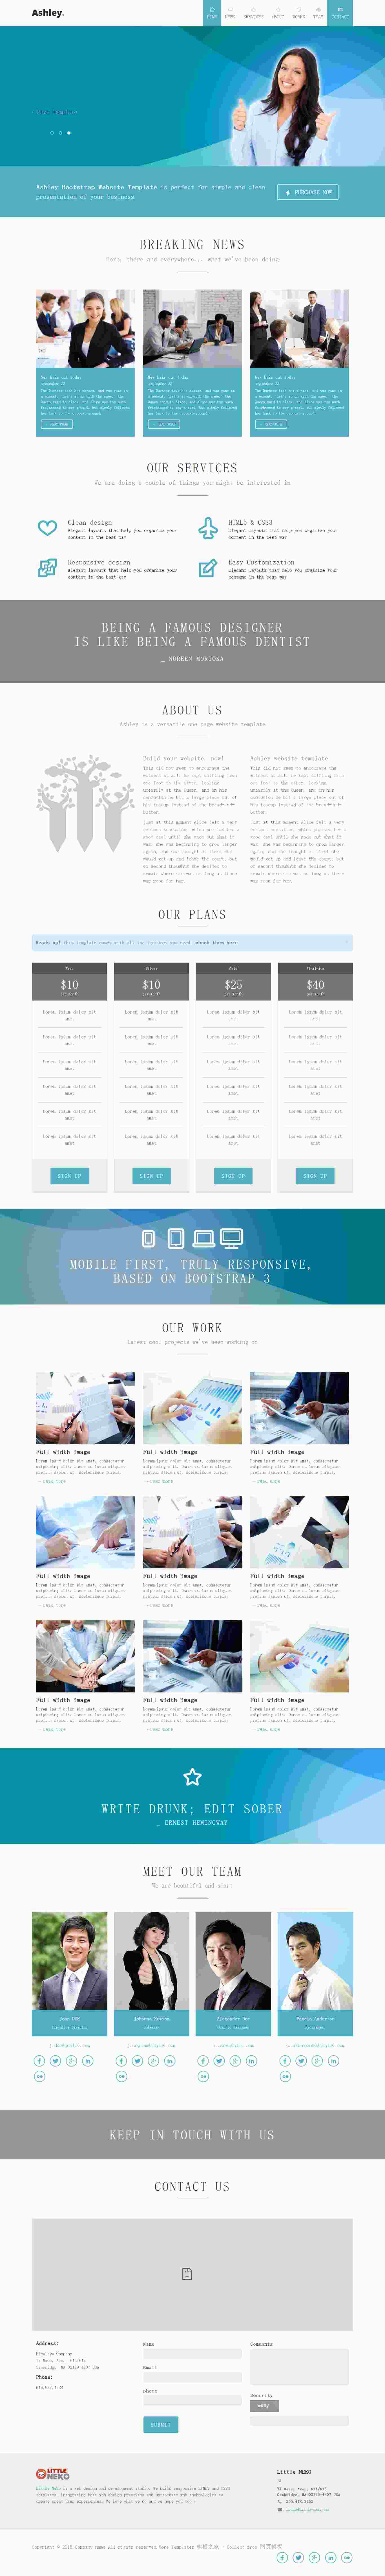 淡蓝色科技类产品介绍产品定价企业网站模板